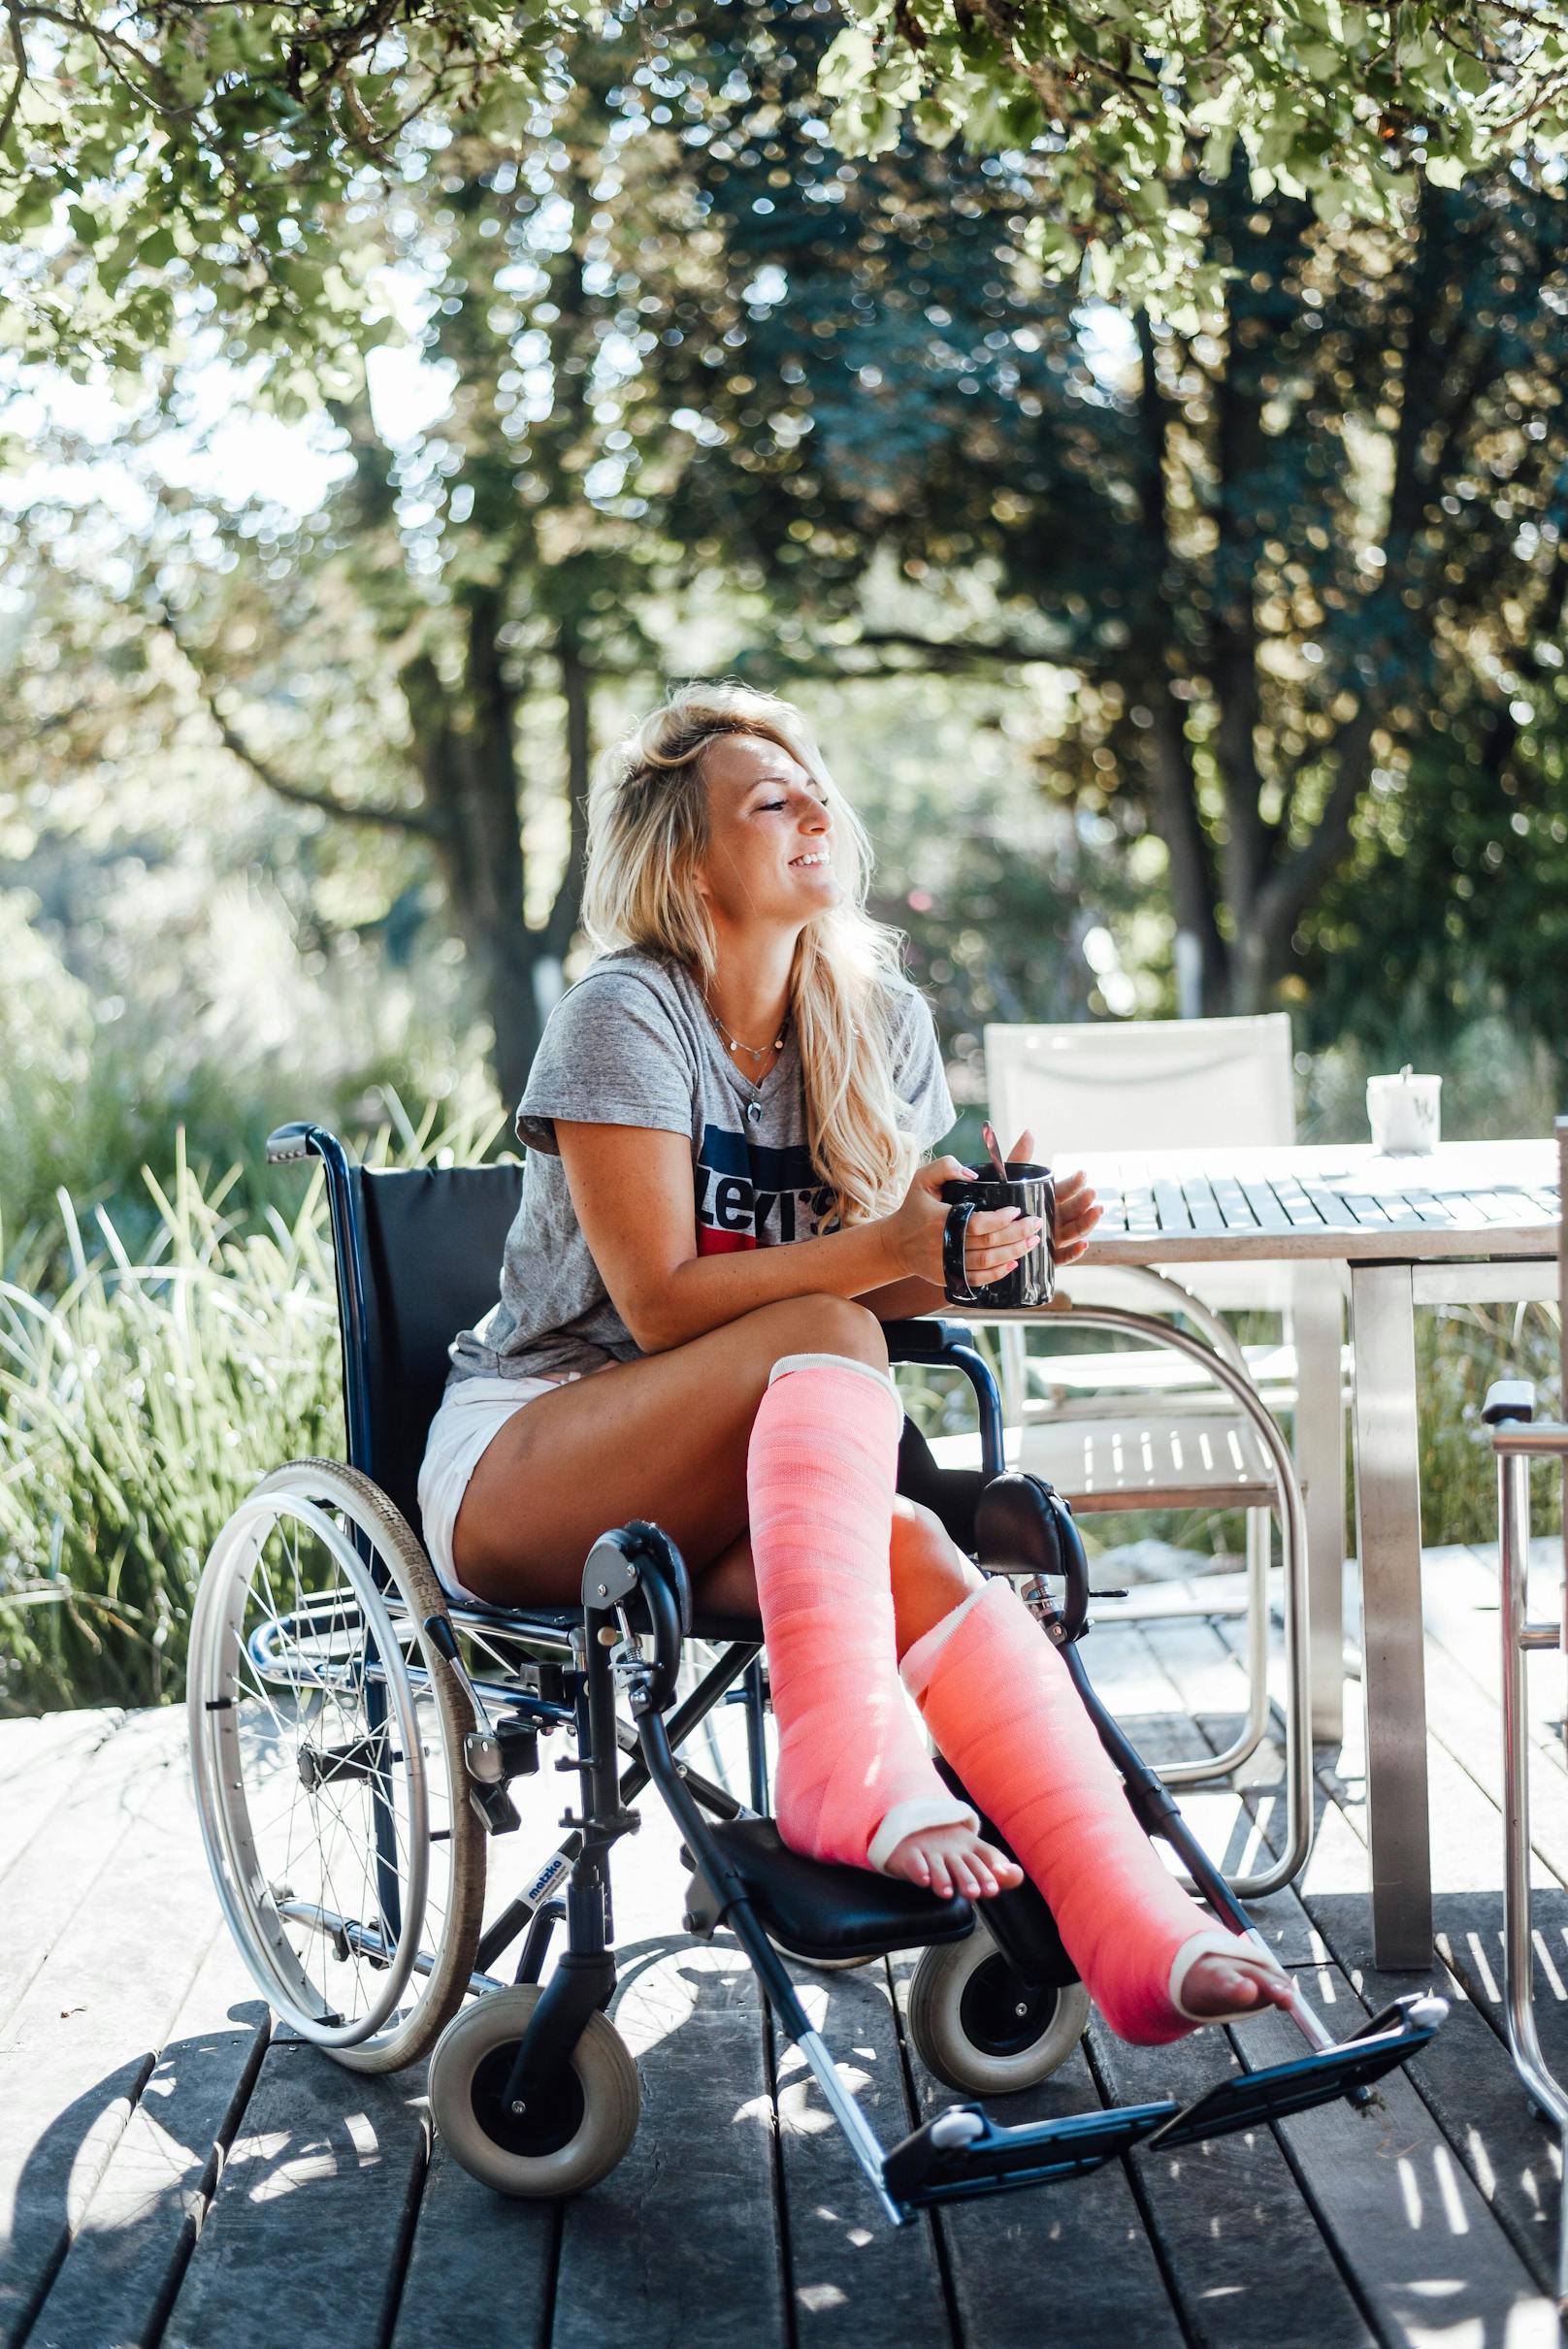 Trotz Gips postete Carina auf Instagram und TikTok fleißig weiter und machte sogar Tutorials für Sportübungen im Rollstuhl.